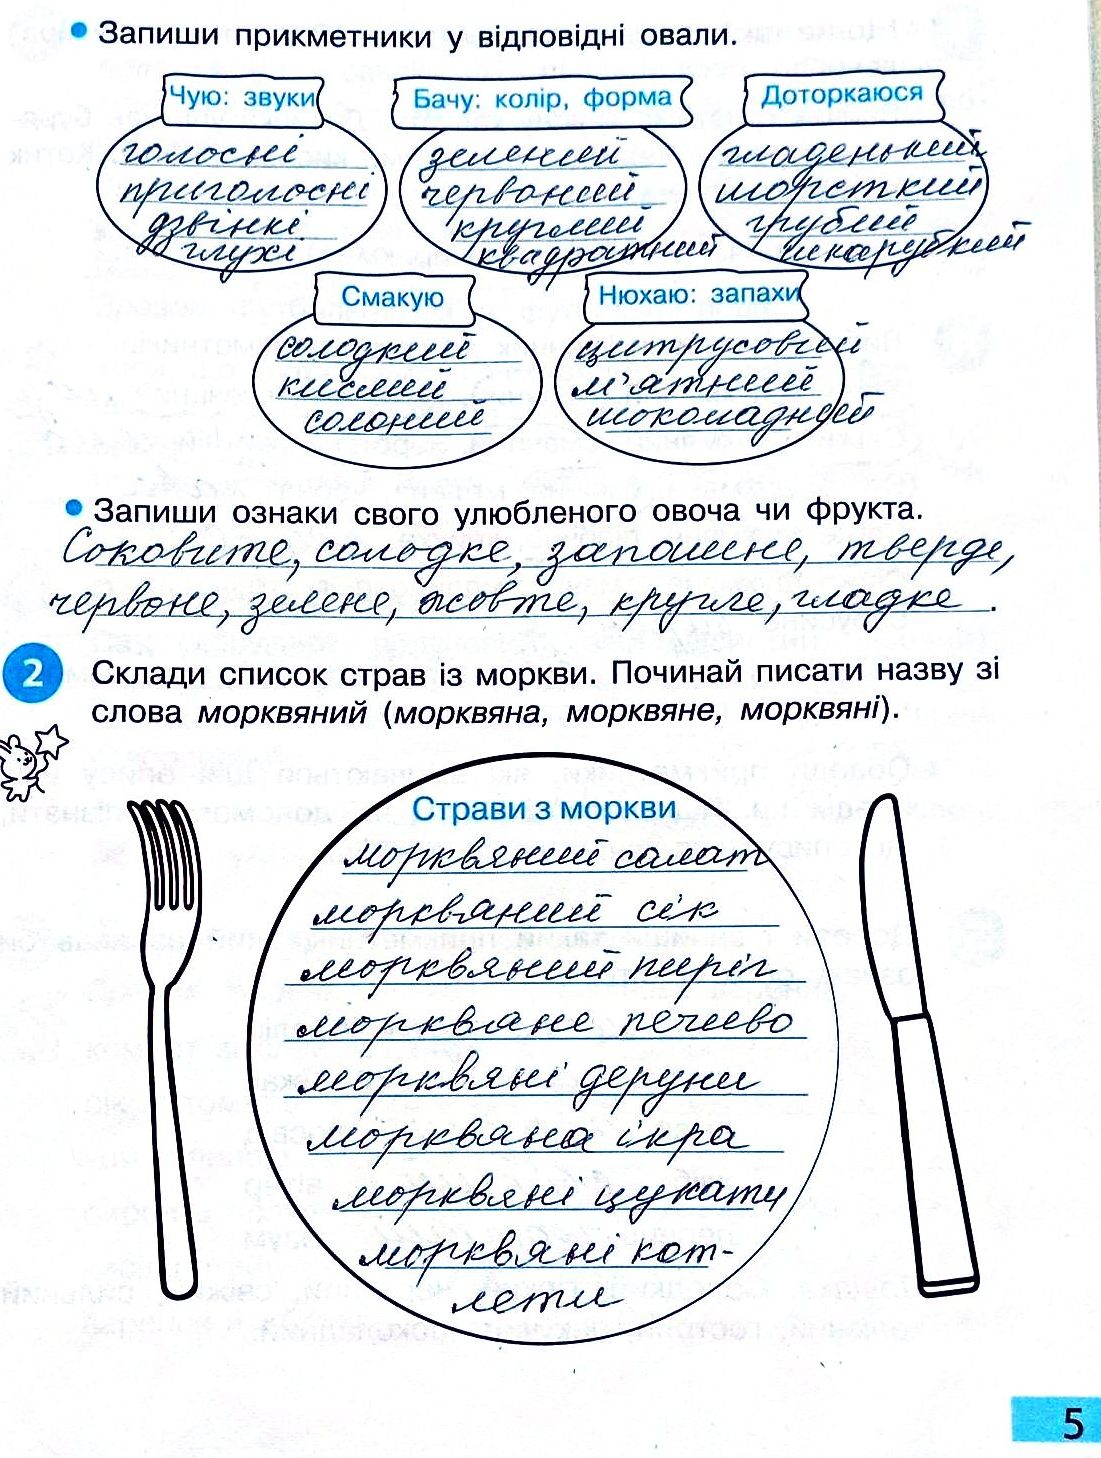 Сторінка 5 частина 2 гдз 3 клас робочий зошит українська мова Большакова